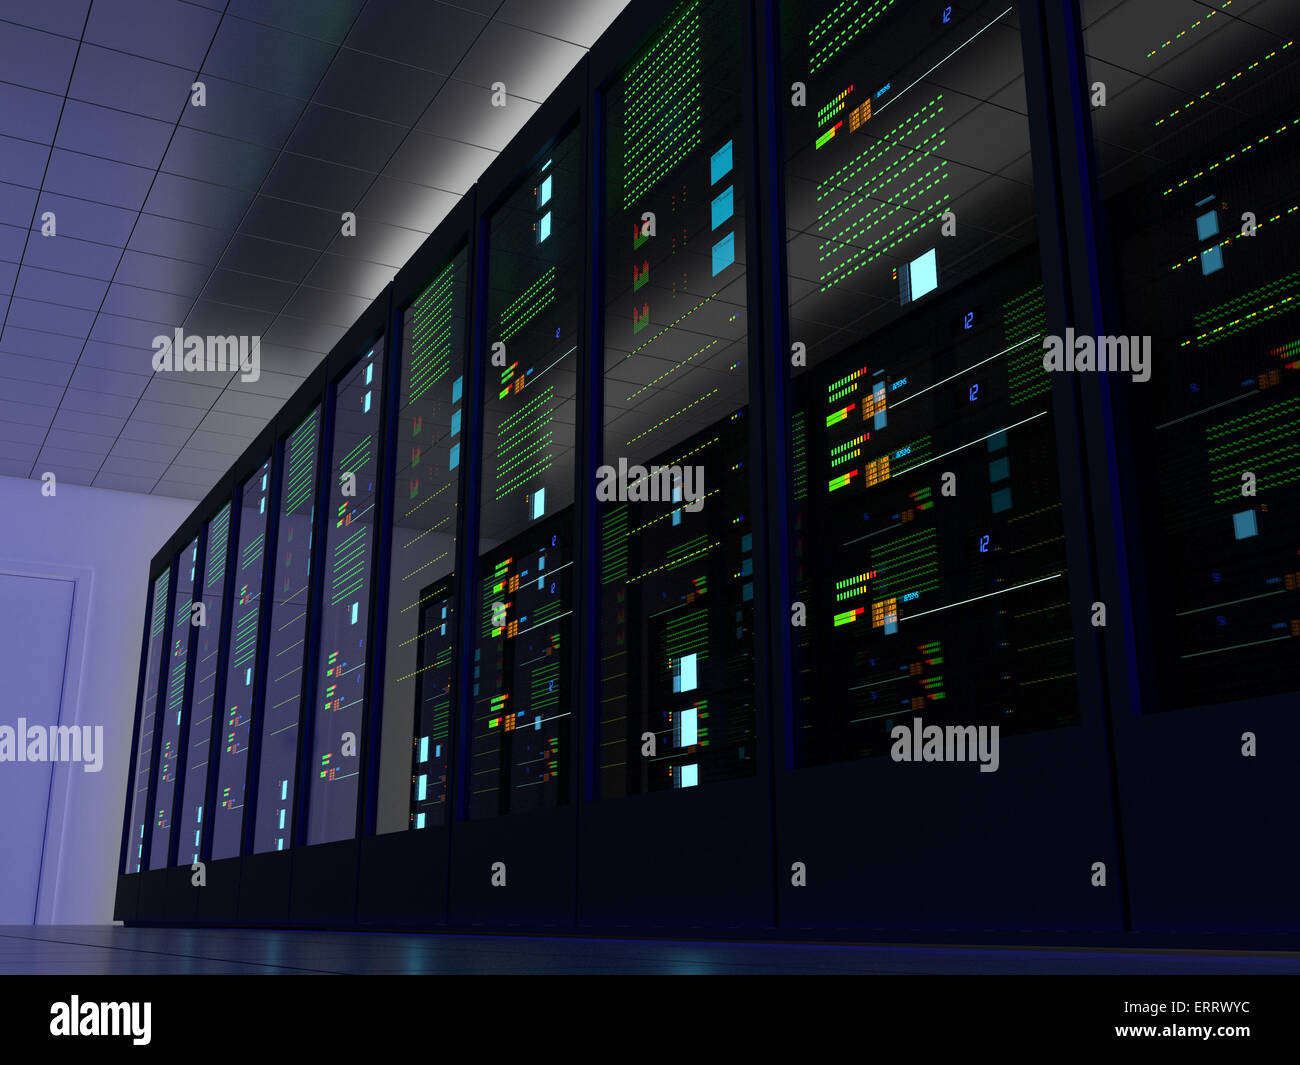 Serverraum (Colocation) oder Colo mit mehreren Schränken, Server, Switches und Gateways. Einer Seite. Stockfoto